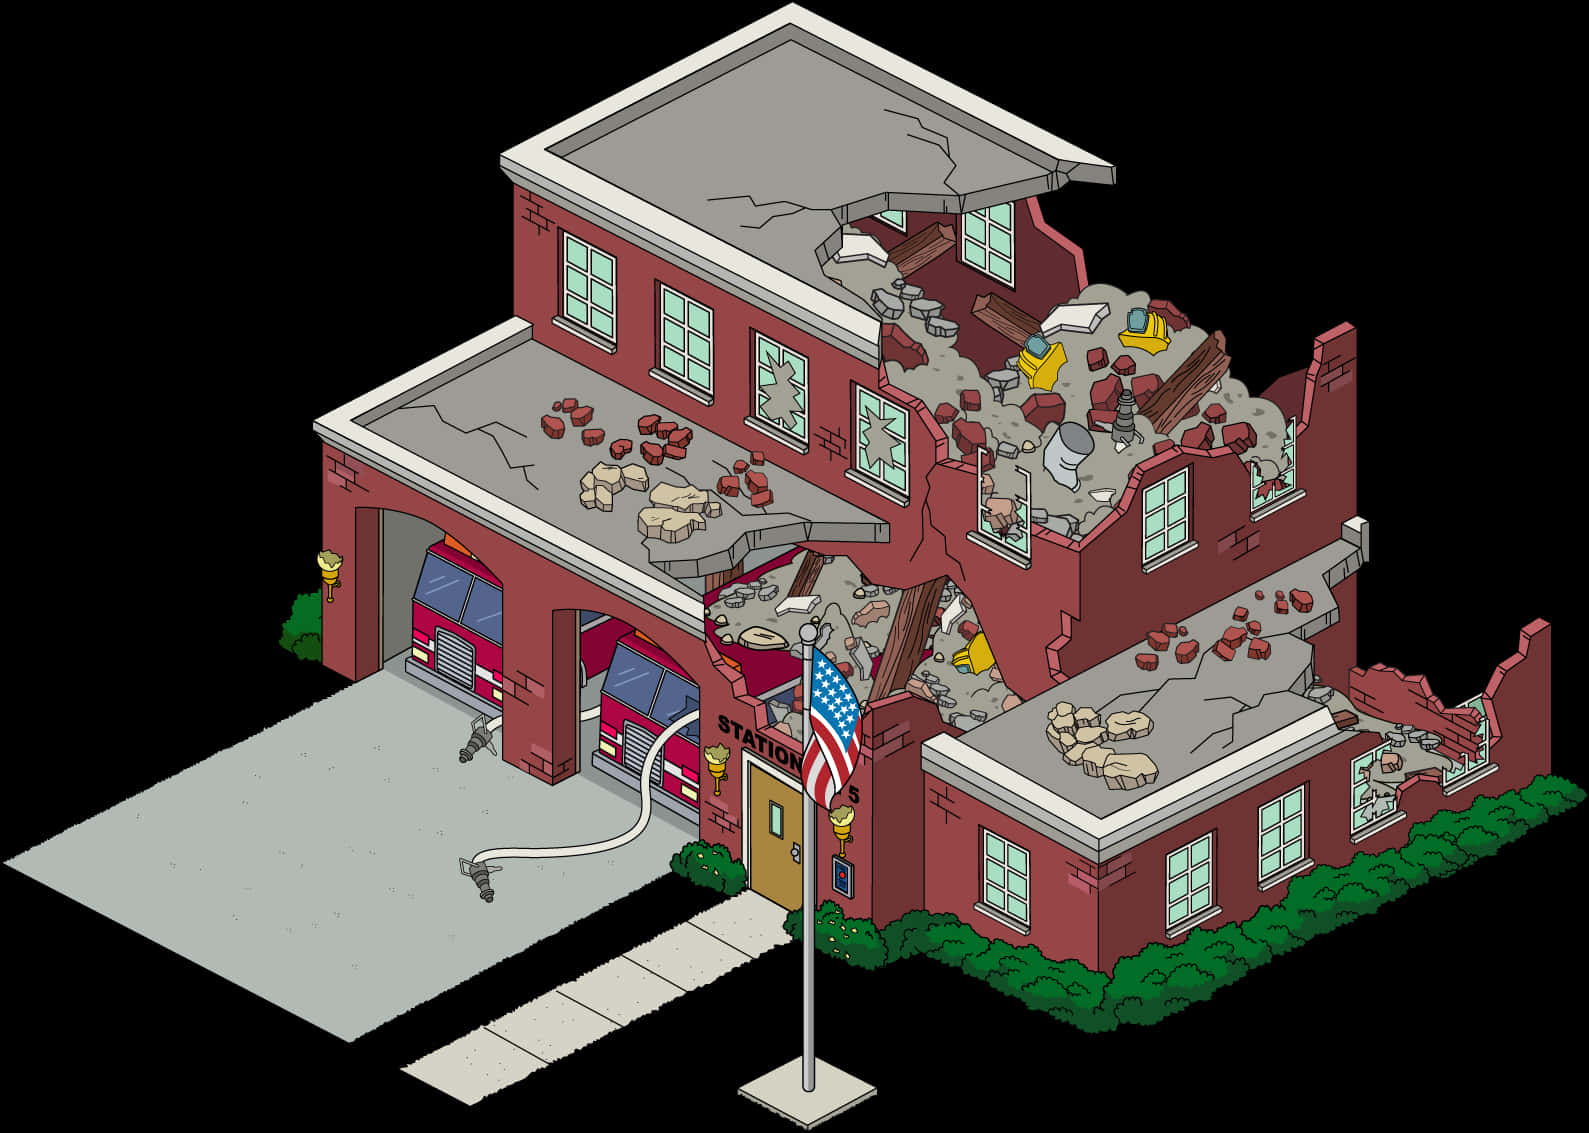 Damaged Fire Station Illustration